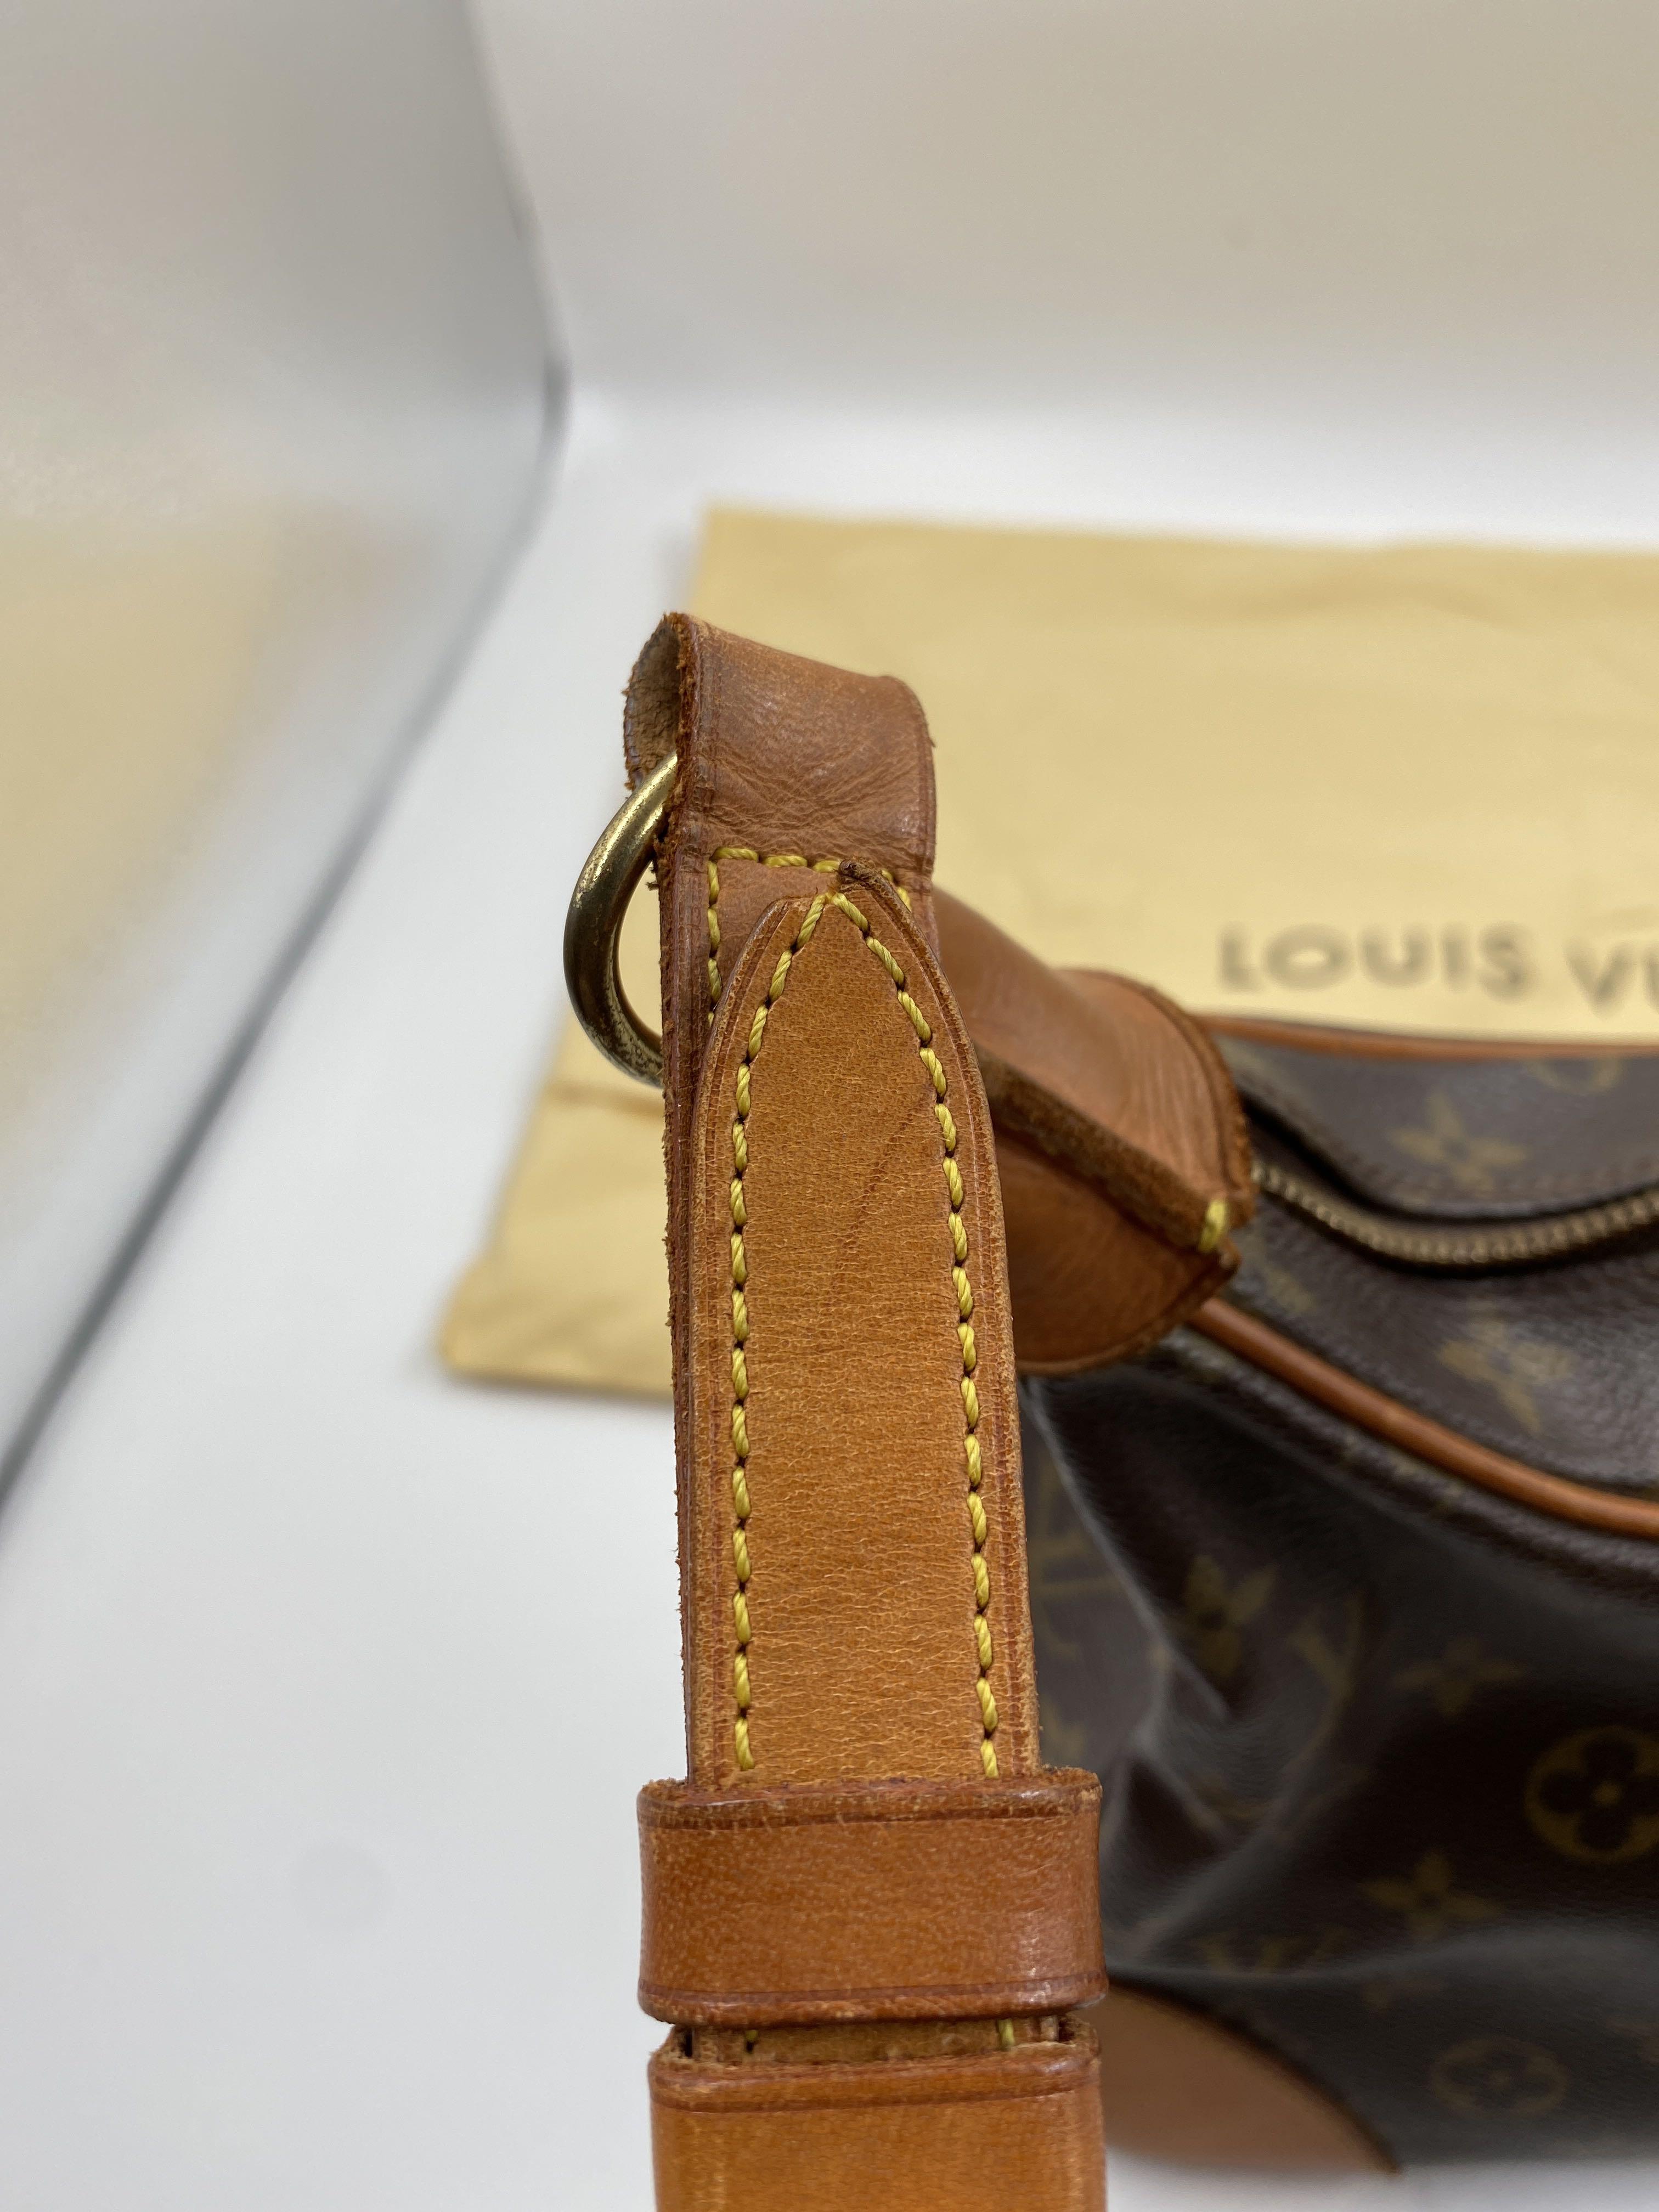 Louis Vuitton Boulogne Handbag 310682